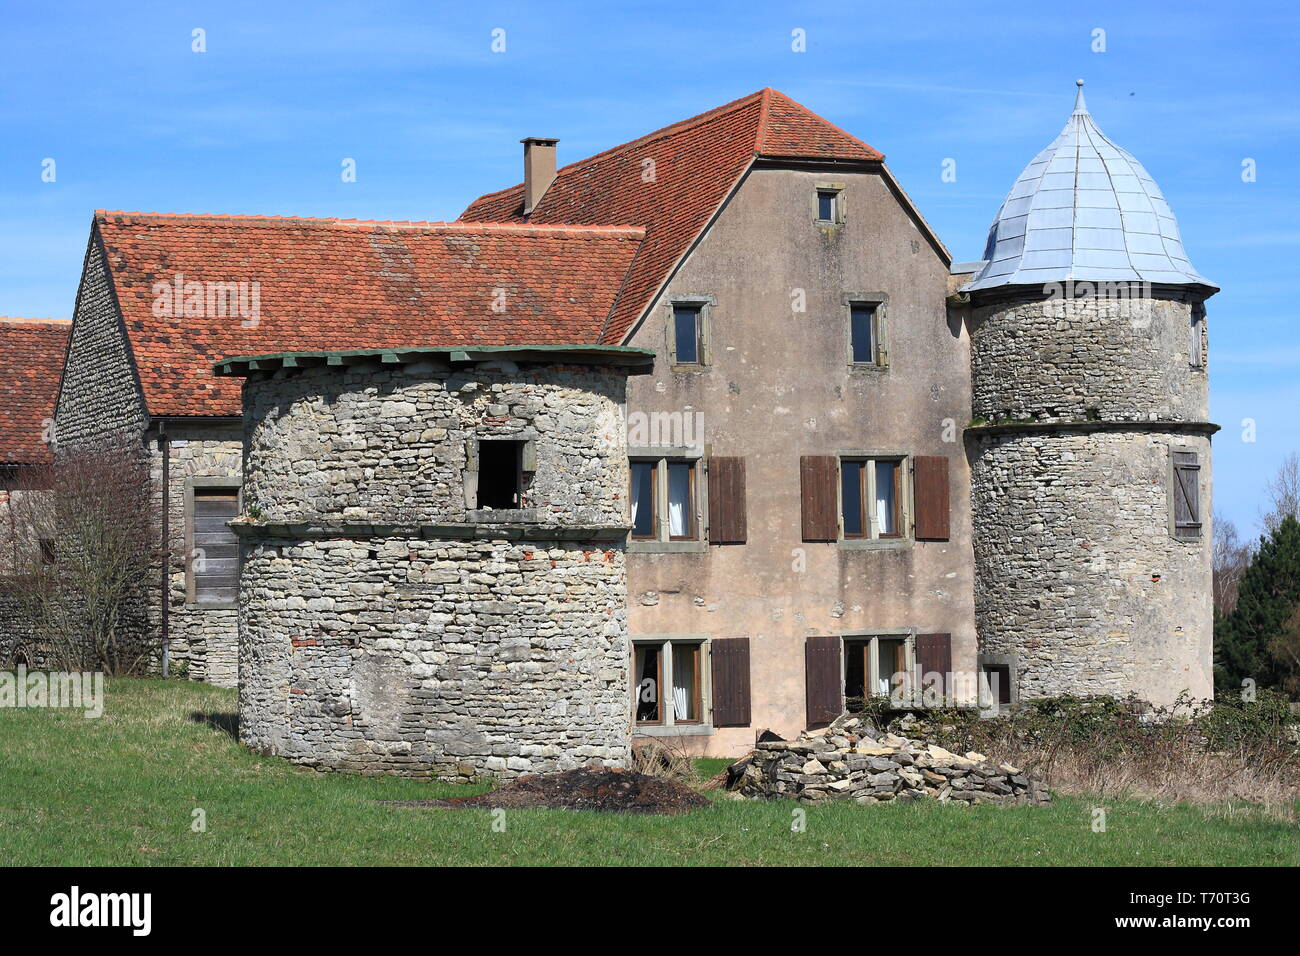 Castle in Diedenhofen Stock Photo